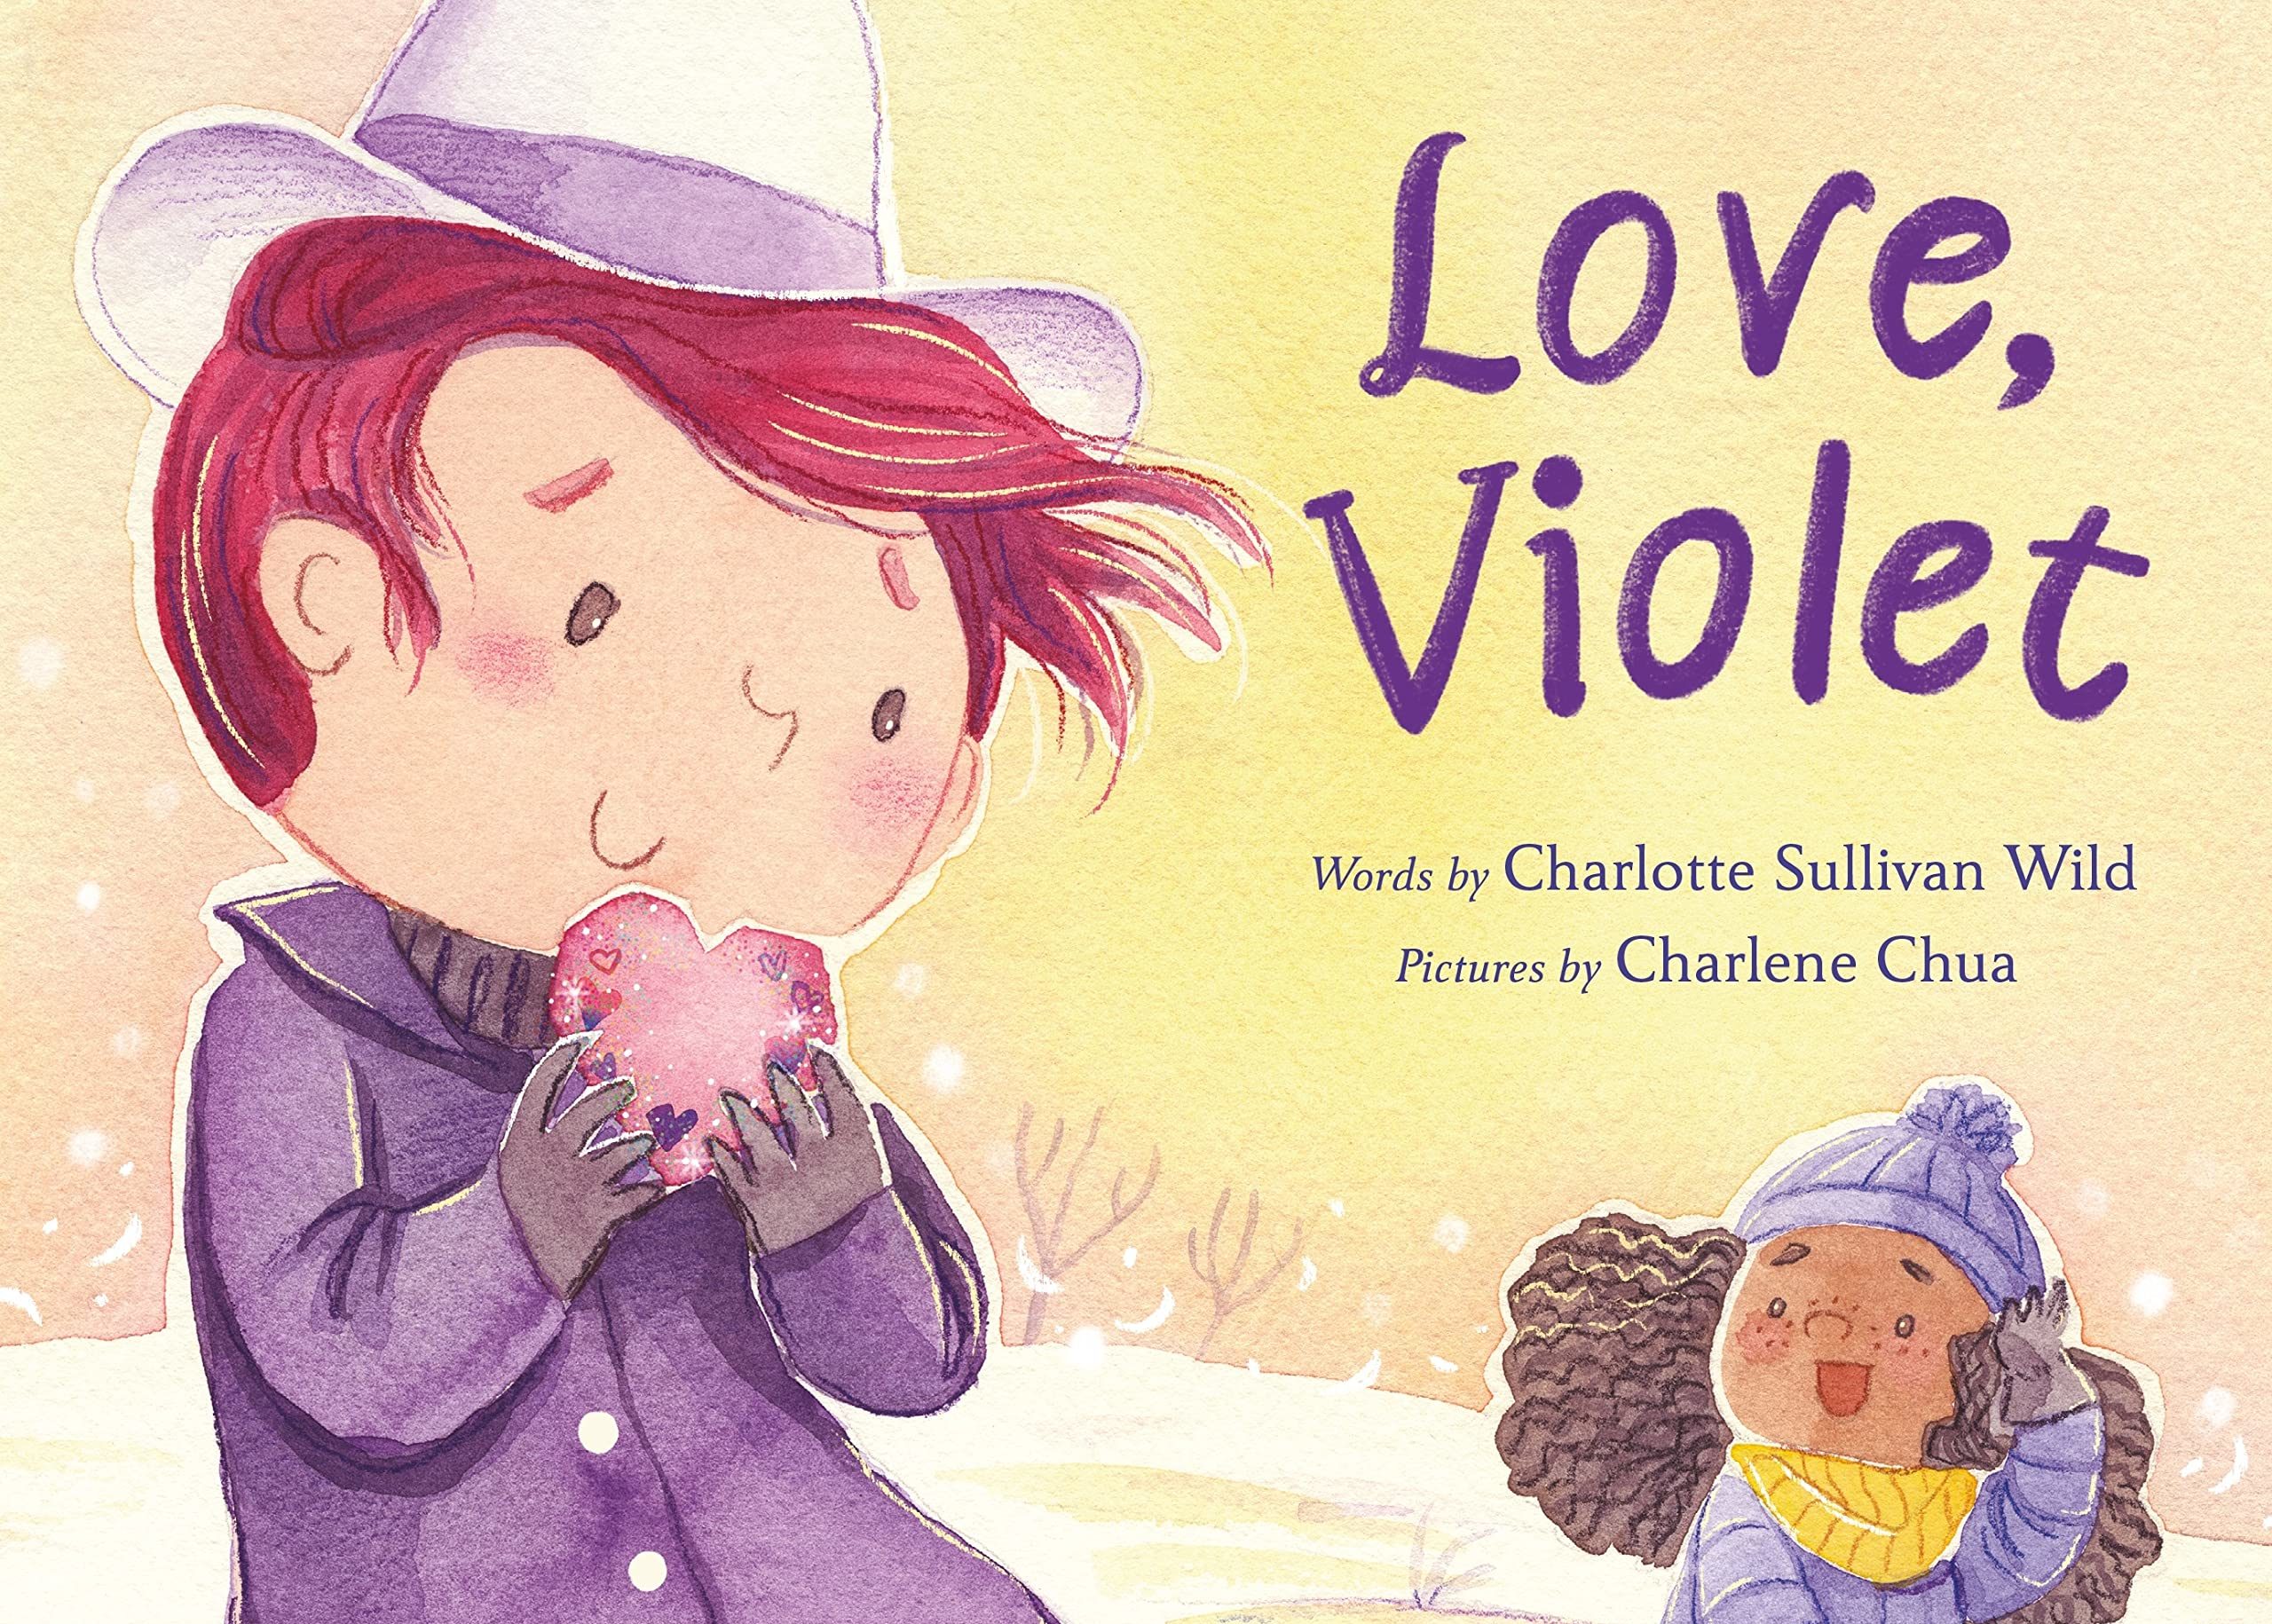 Love, Violet Interview with Charlotte Sullivan Wild & Charlene Chua